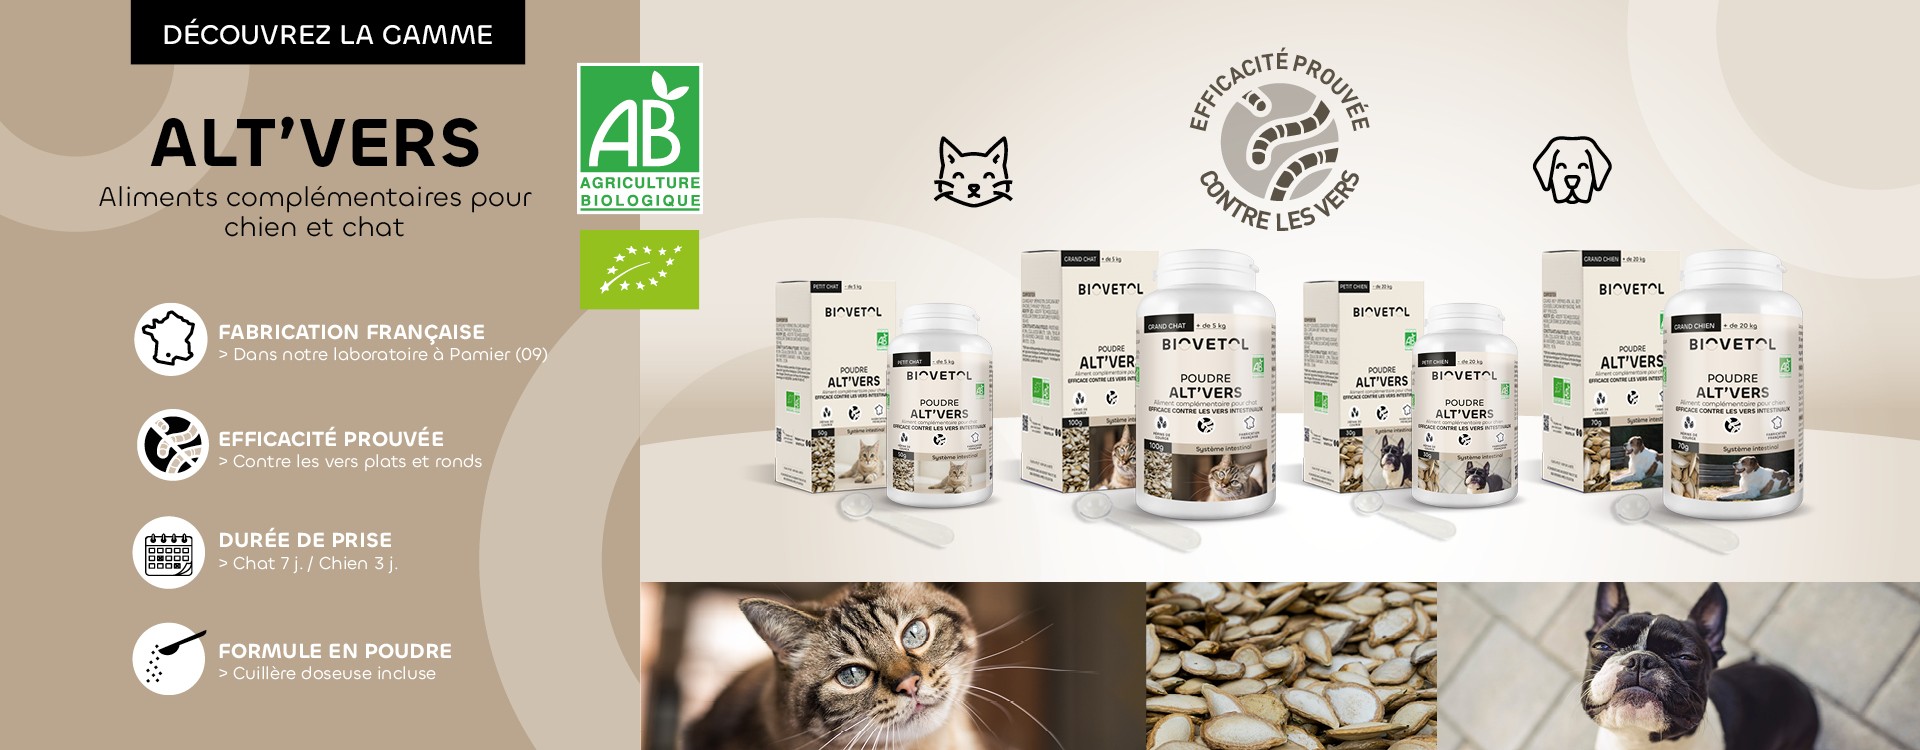 Vermifuge naturel chiens et chats produit bio Biovetol